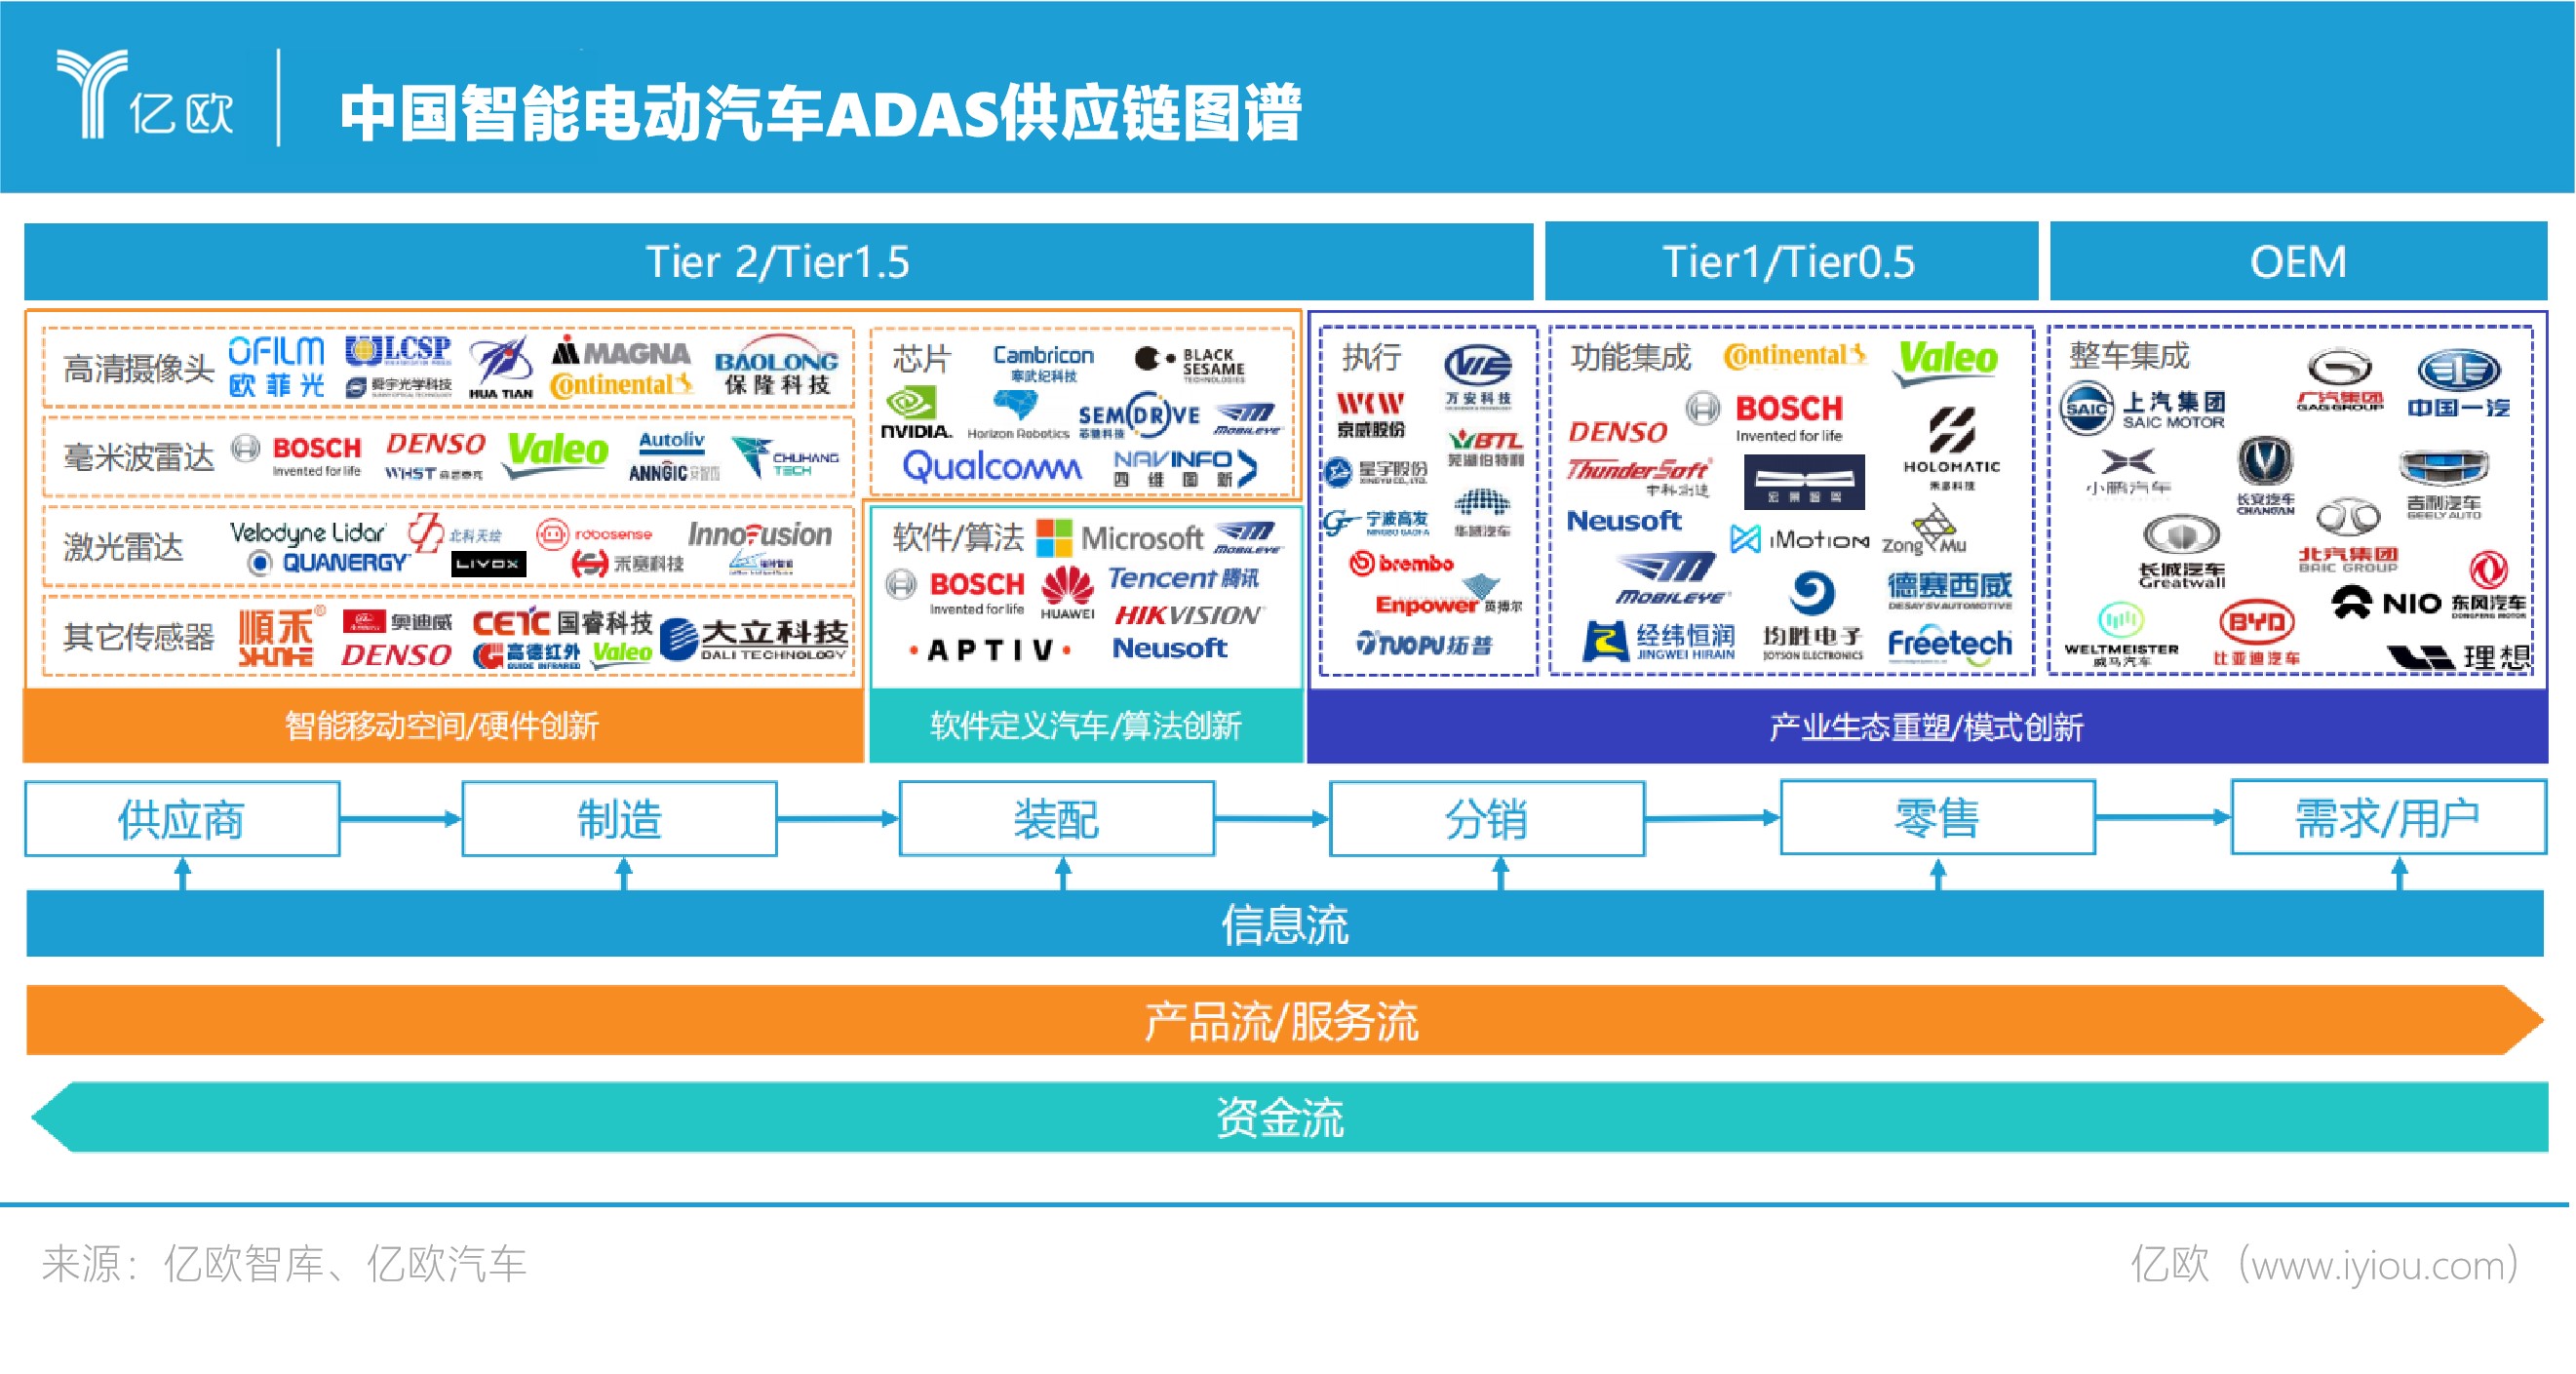 中国智能电动汽车ADAS供应链图谱